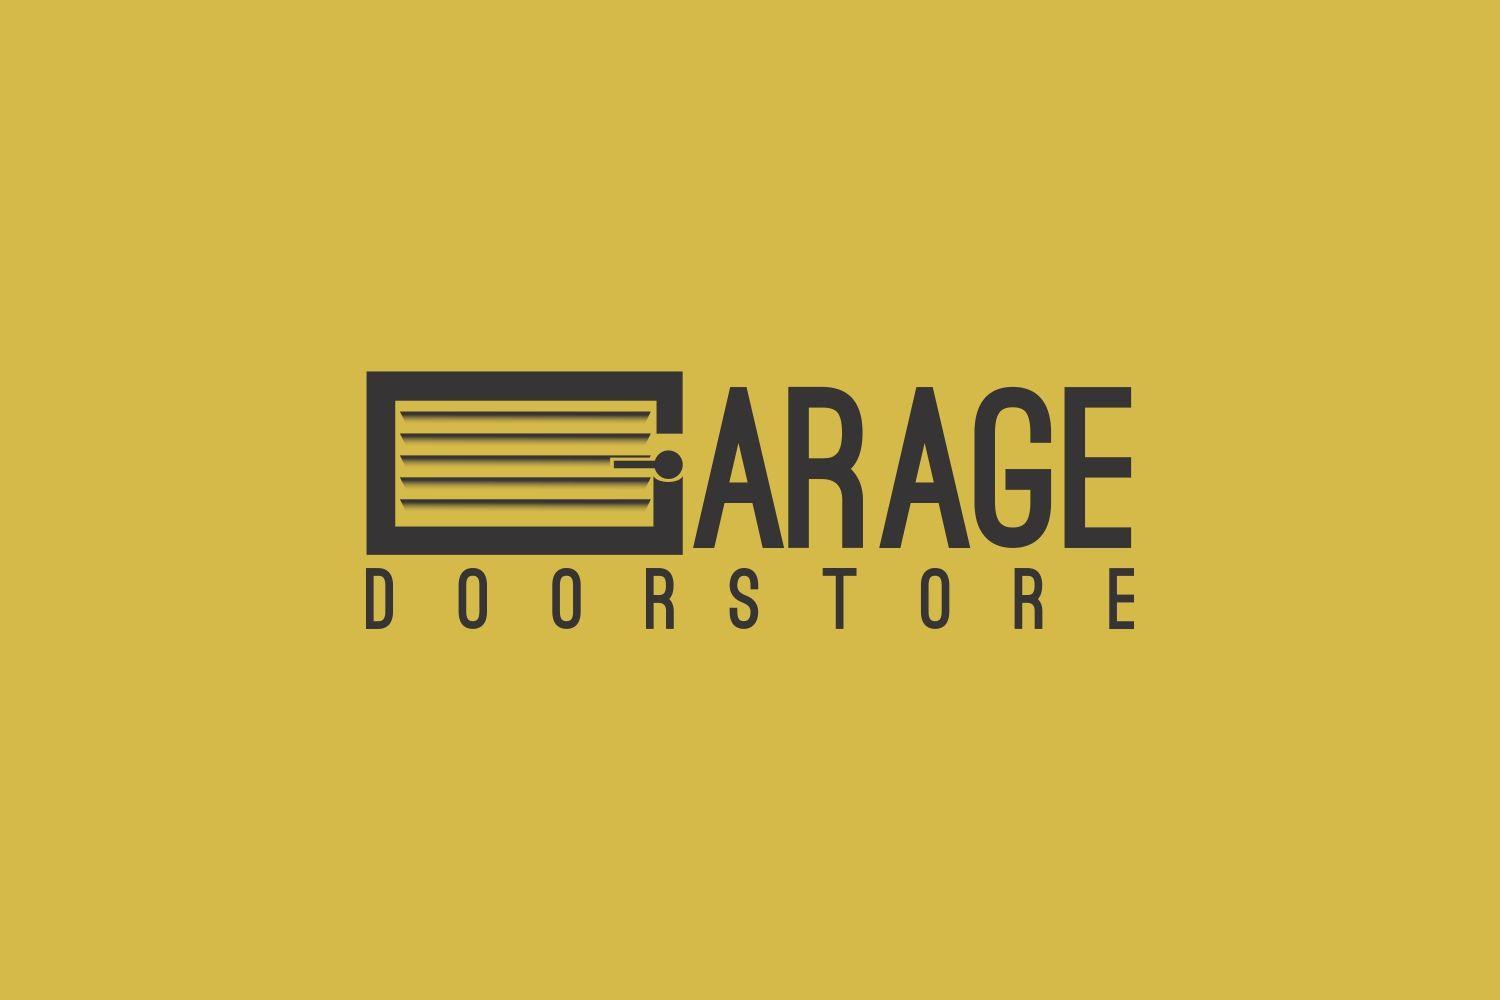 Garage Store Logo - Logo Design for Garage Door Store by AlieDesign. Design